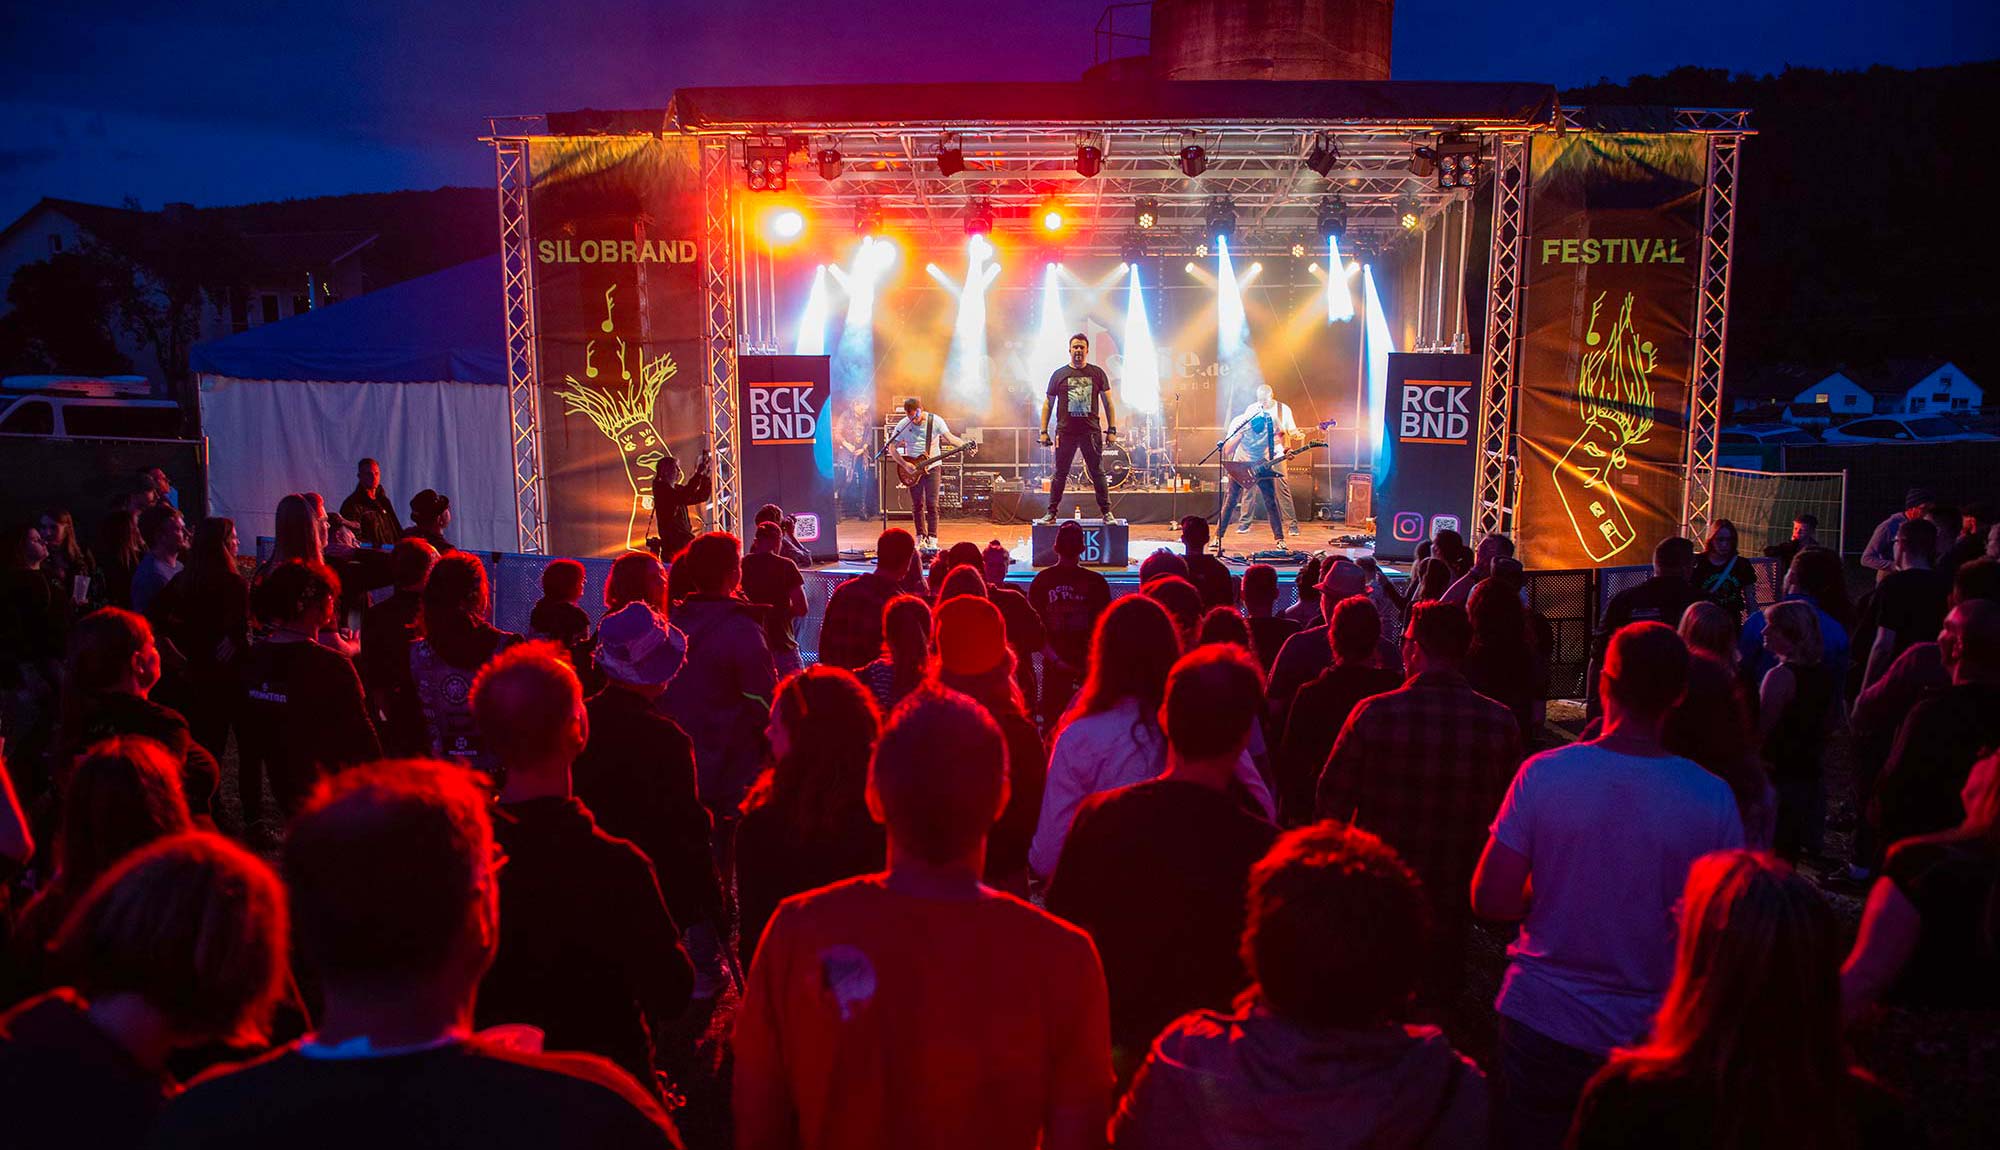 Festivalbegeisterte haben sich Ende Juli im kleinen Dorf Wichte beim Silobrand Festival von zahlreichen Bands und DJs begeistern lassen.